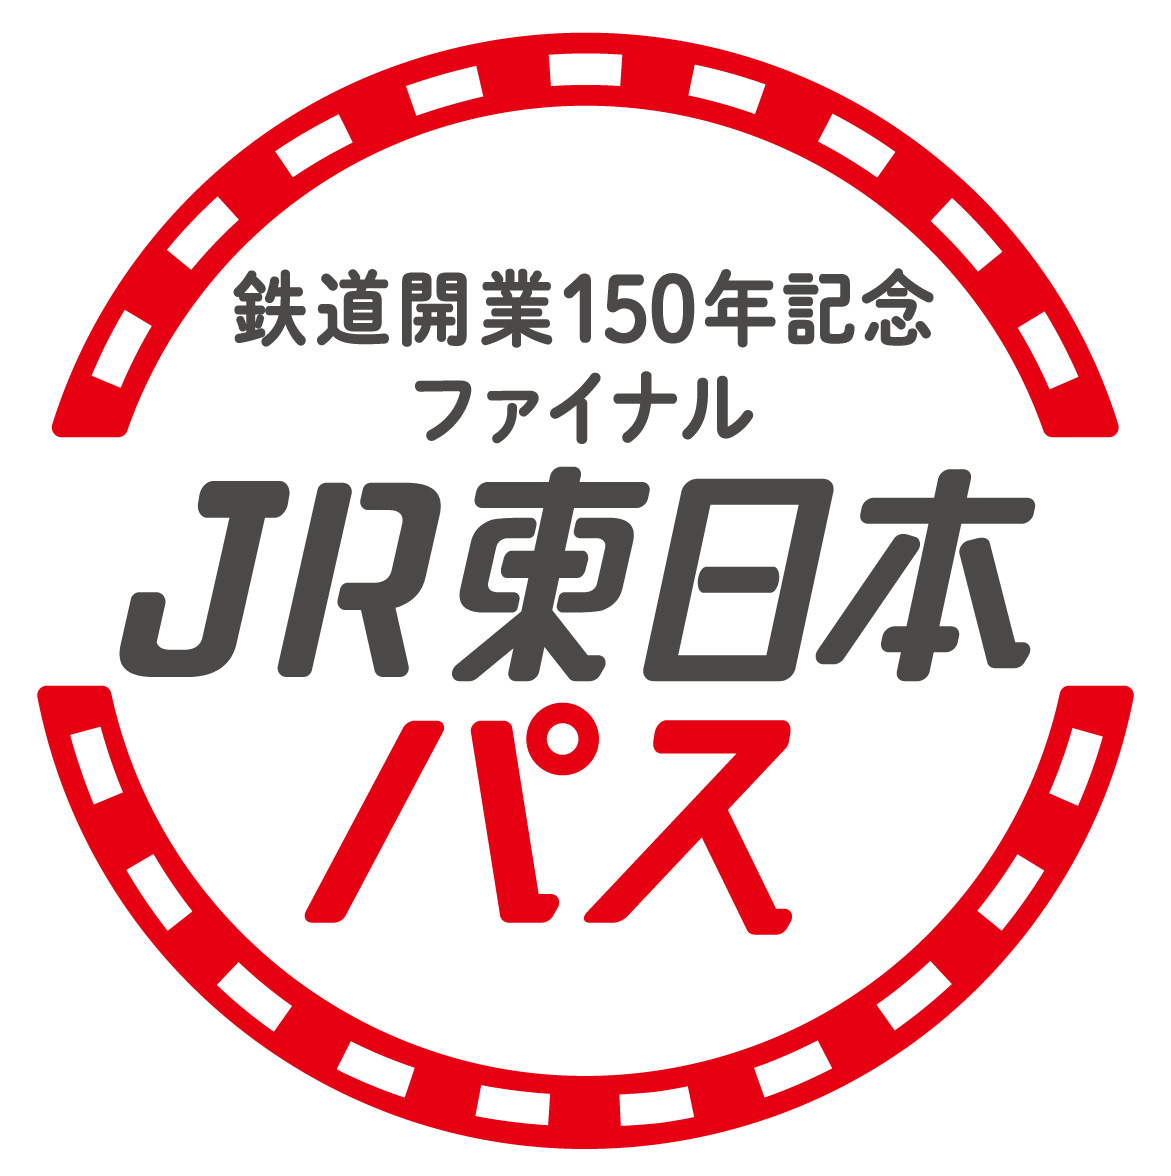 鉄道開業150周年 記念品 JR東日本 www.krzysztofbialy.com